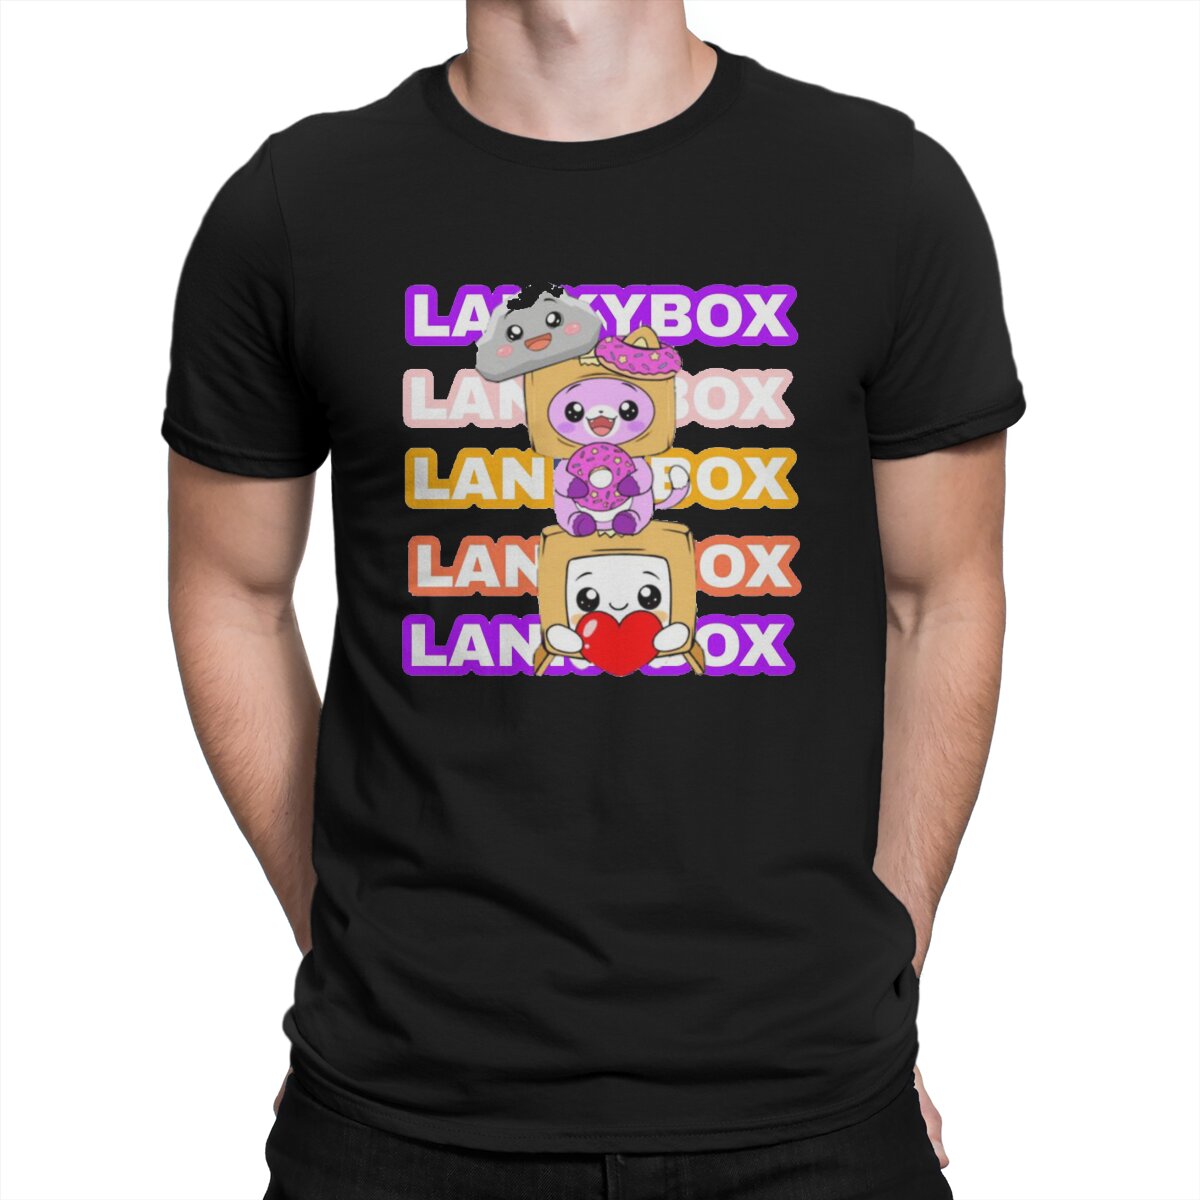 Youtube Men s T Shirt Lanky Box Amazing Tees Short Sleeve O Neck T Shirt 100 - Lankybox Plush